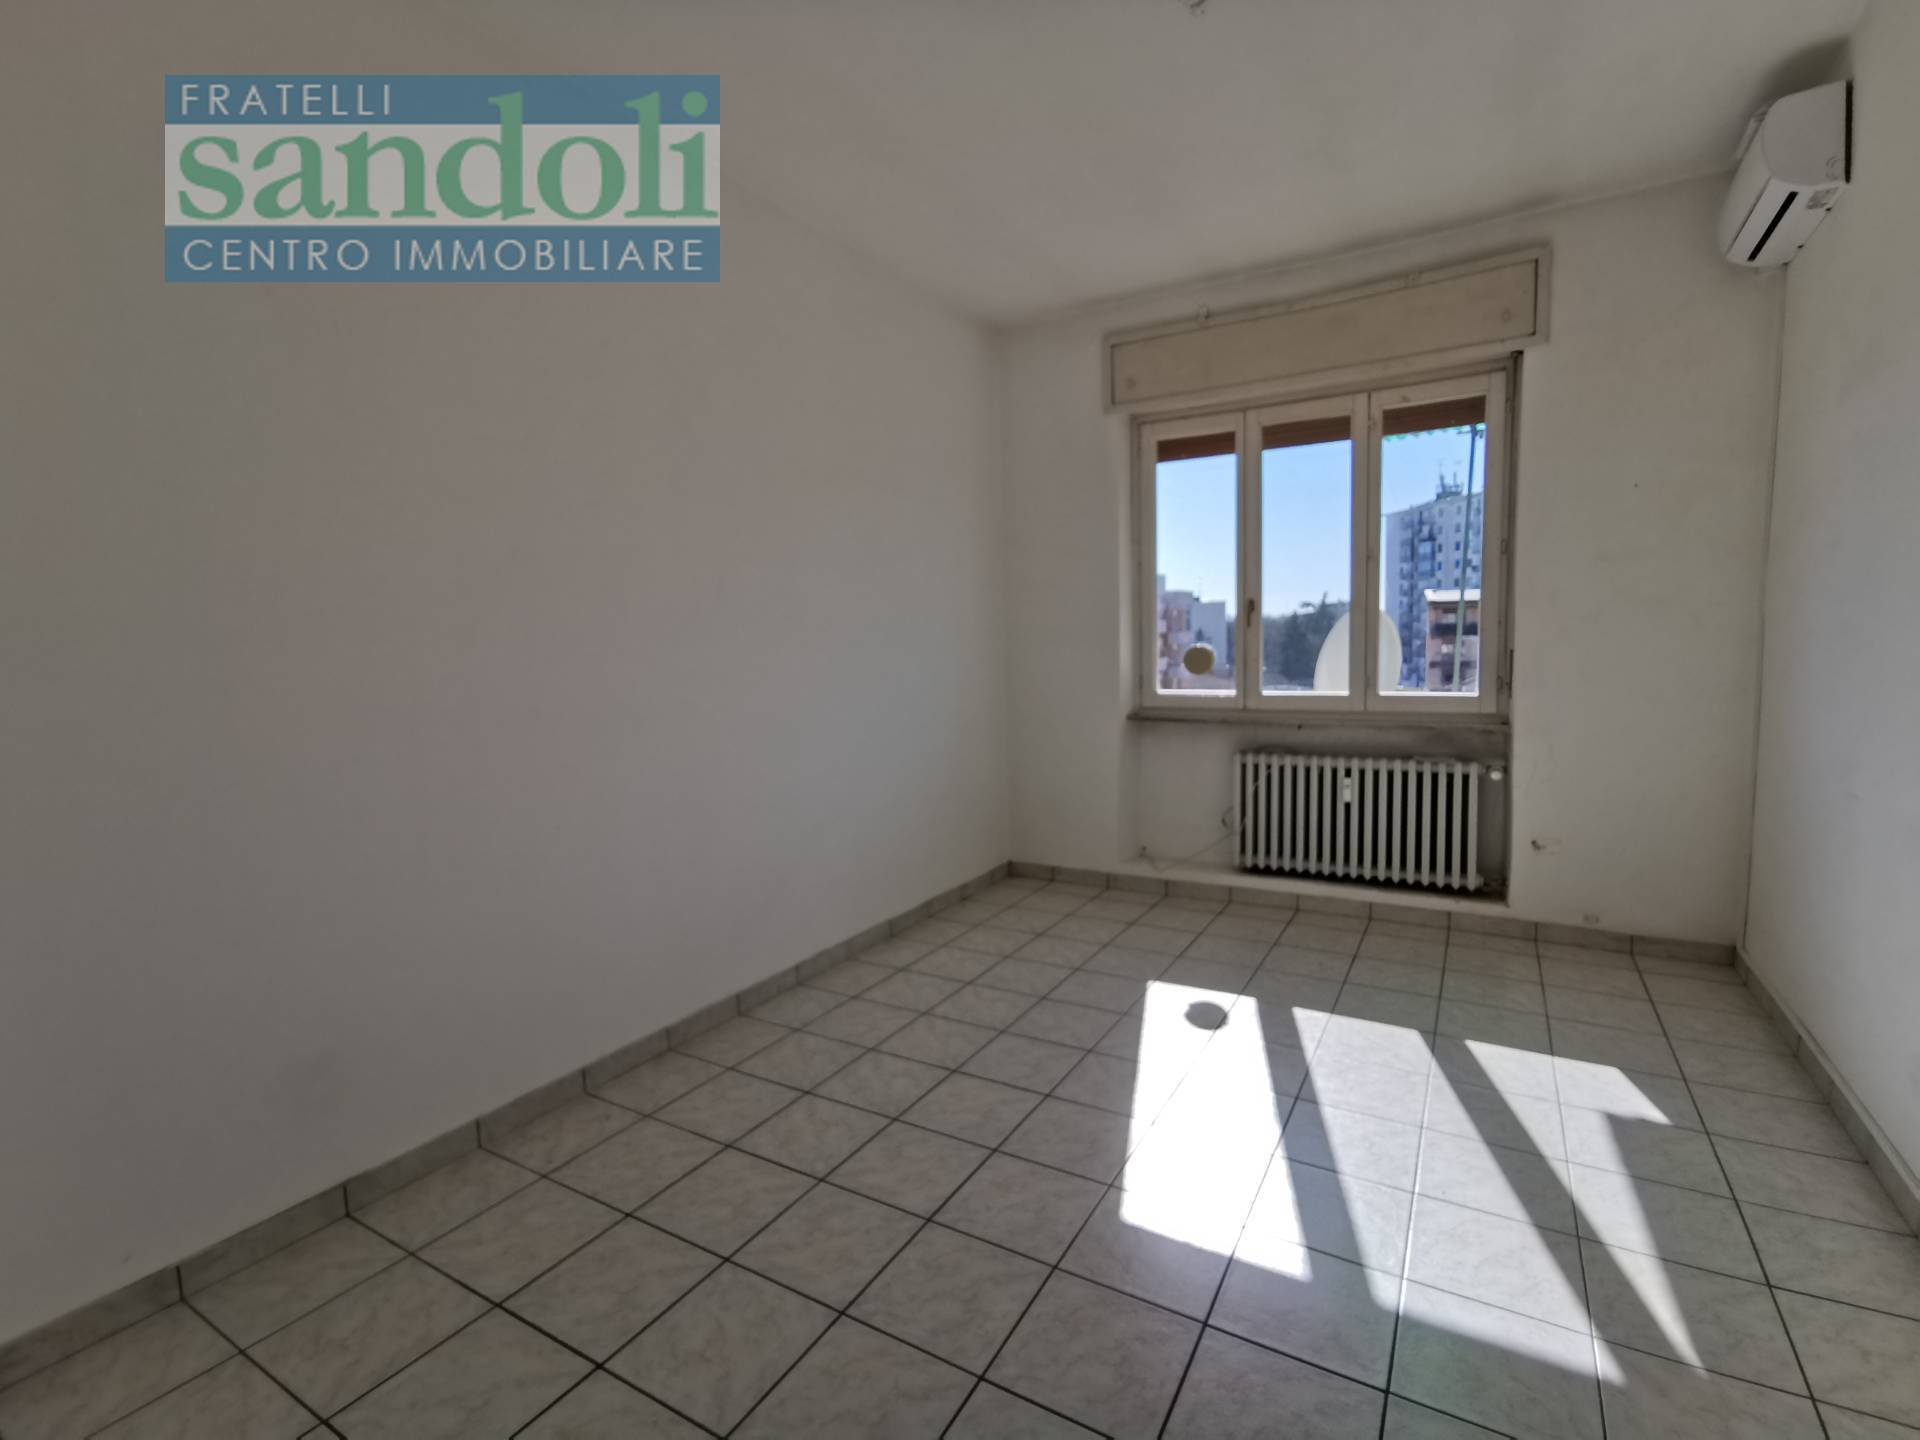 Appartamento in affitto a Vercelli, 2 locali, zona Località: VialeRimembranza, Trattative riservate | PortaleAgenzieImmobiliari.it